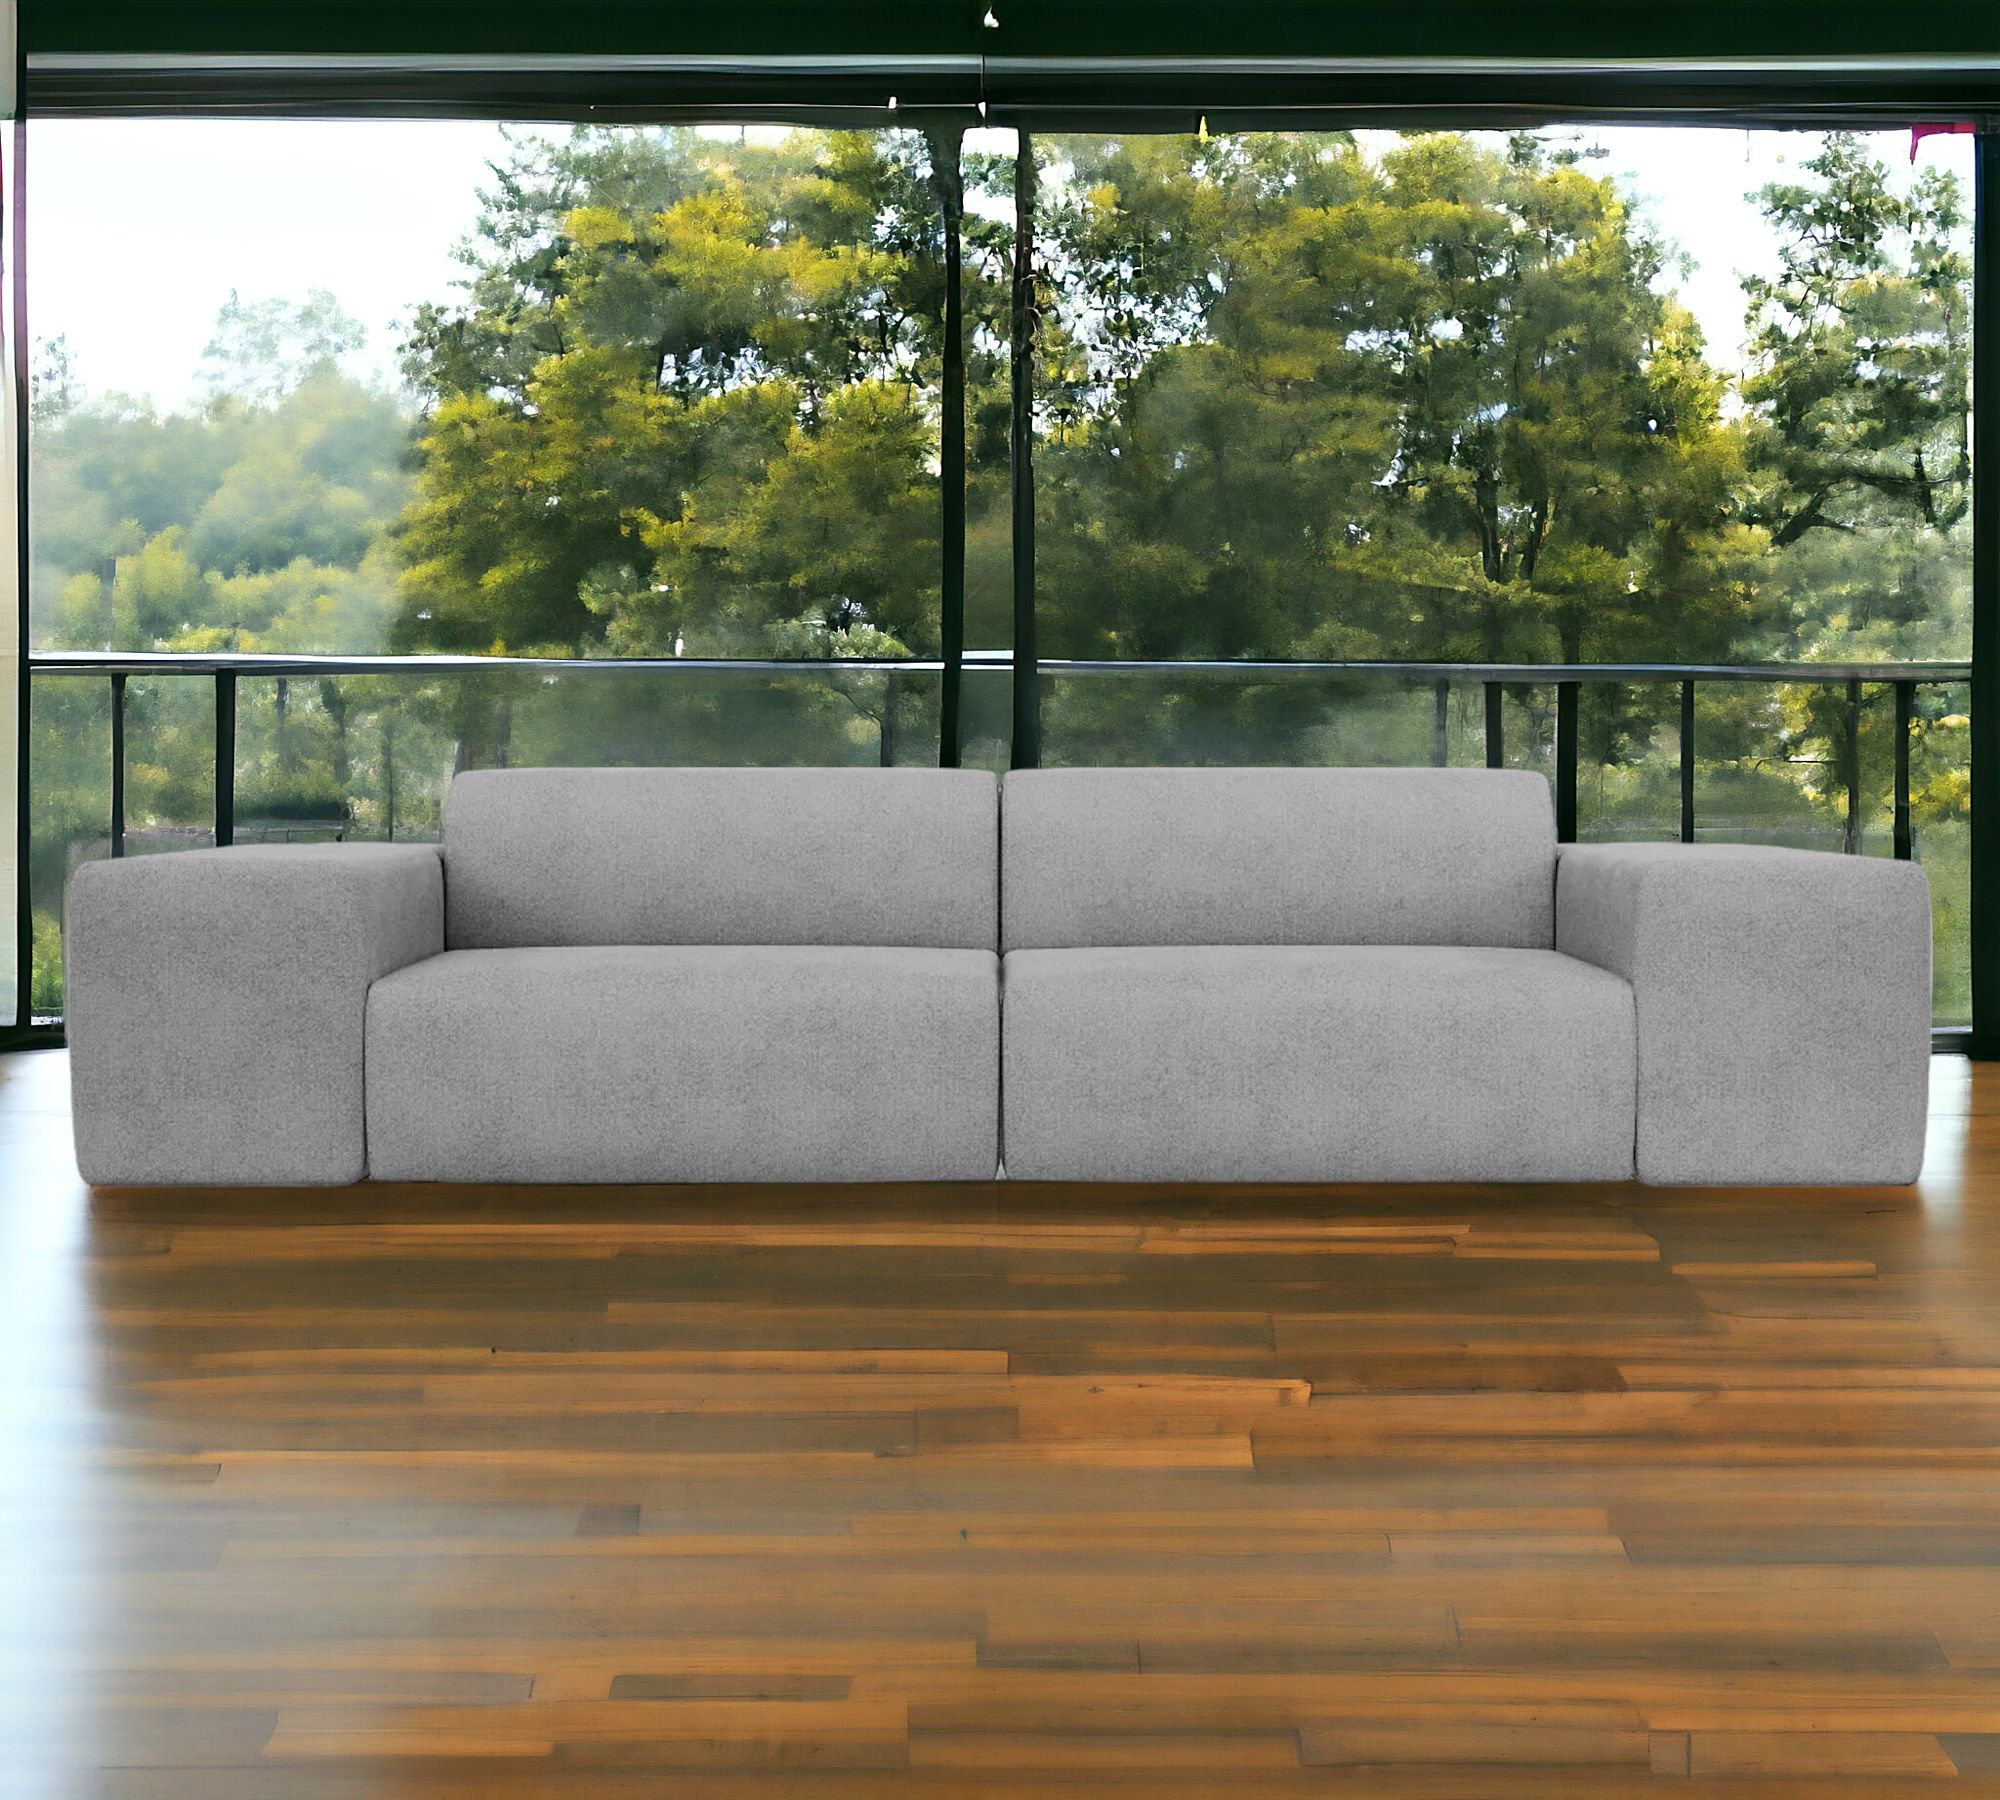 Pyllow Sofa 2-Sitzer Lichtgrau Baumwoll-Leinen Mix